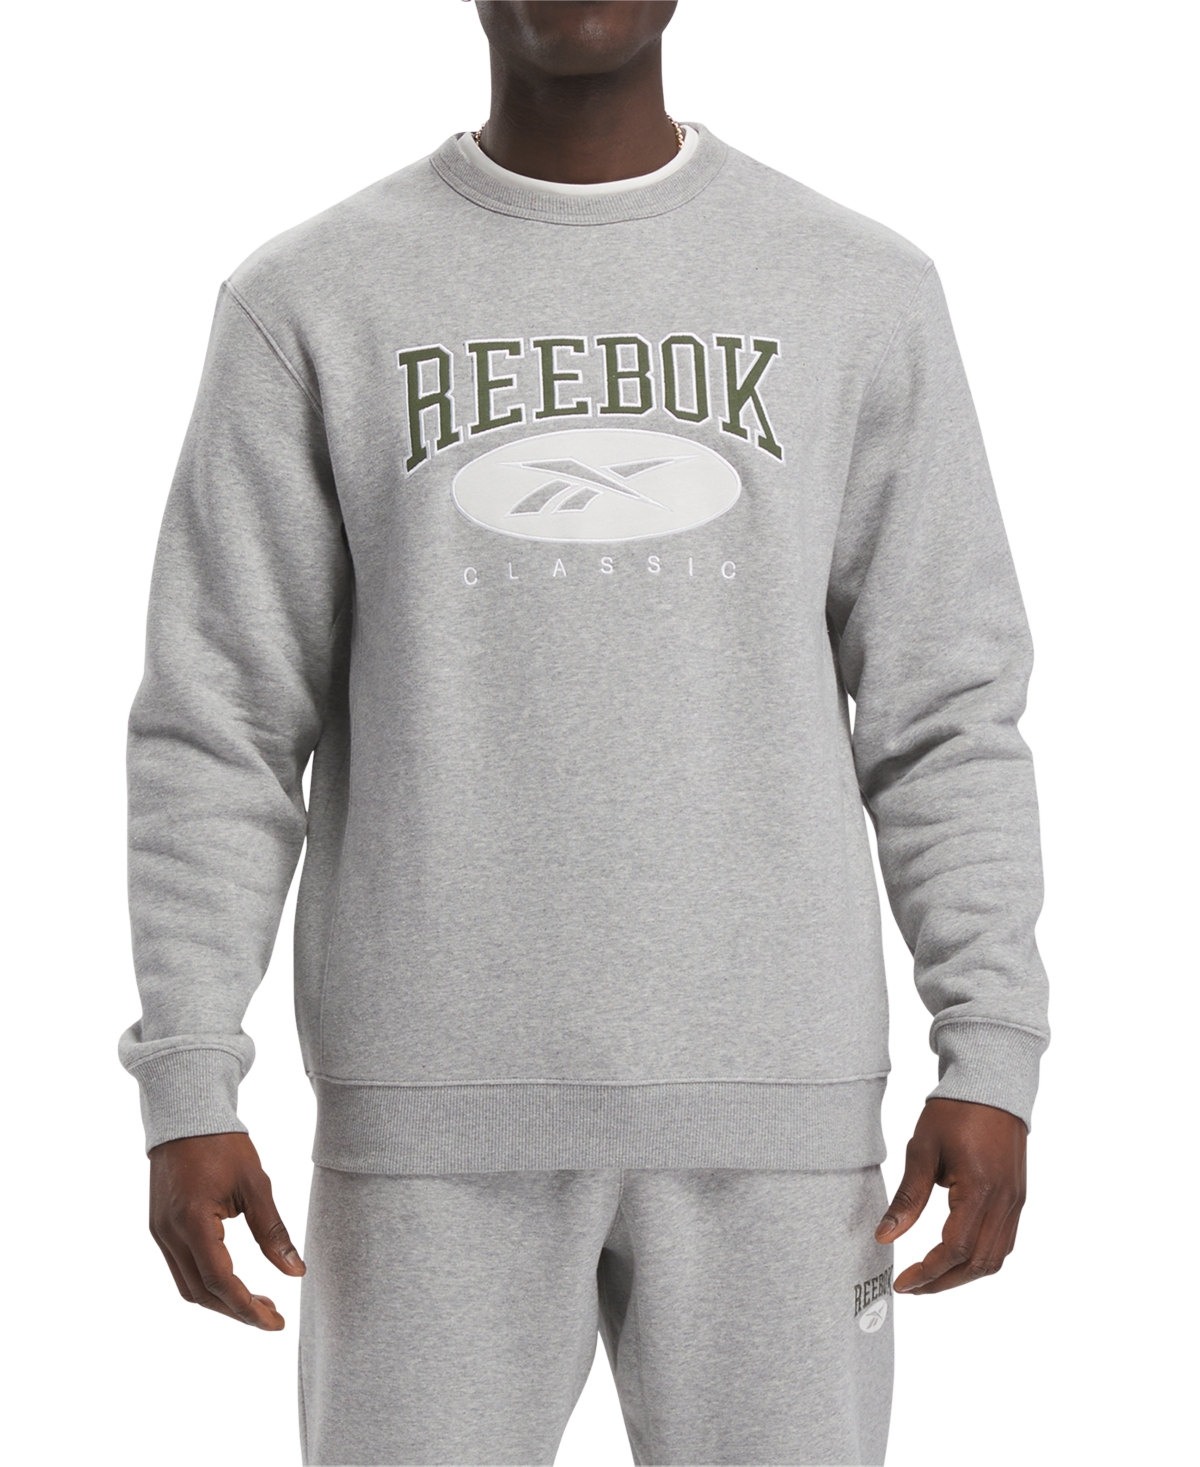 Reebok Classics Archive Essentials Crew Sweatshirt In Grey